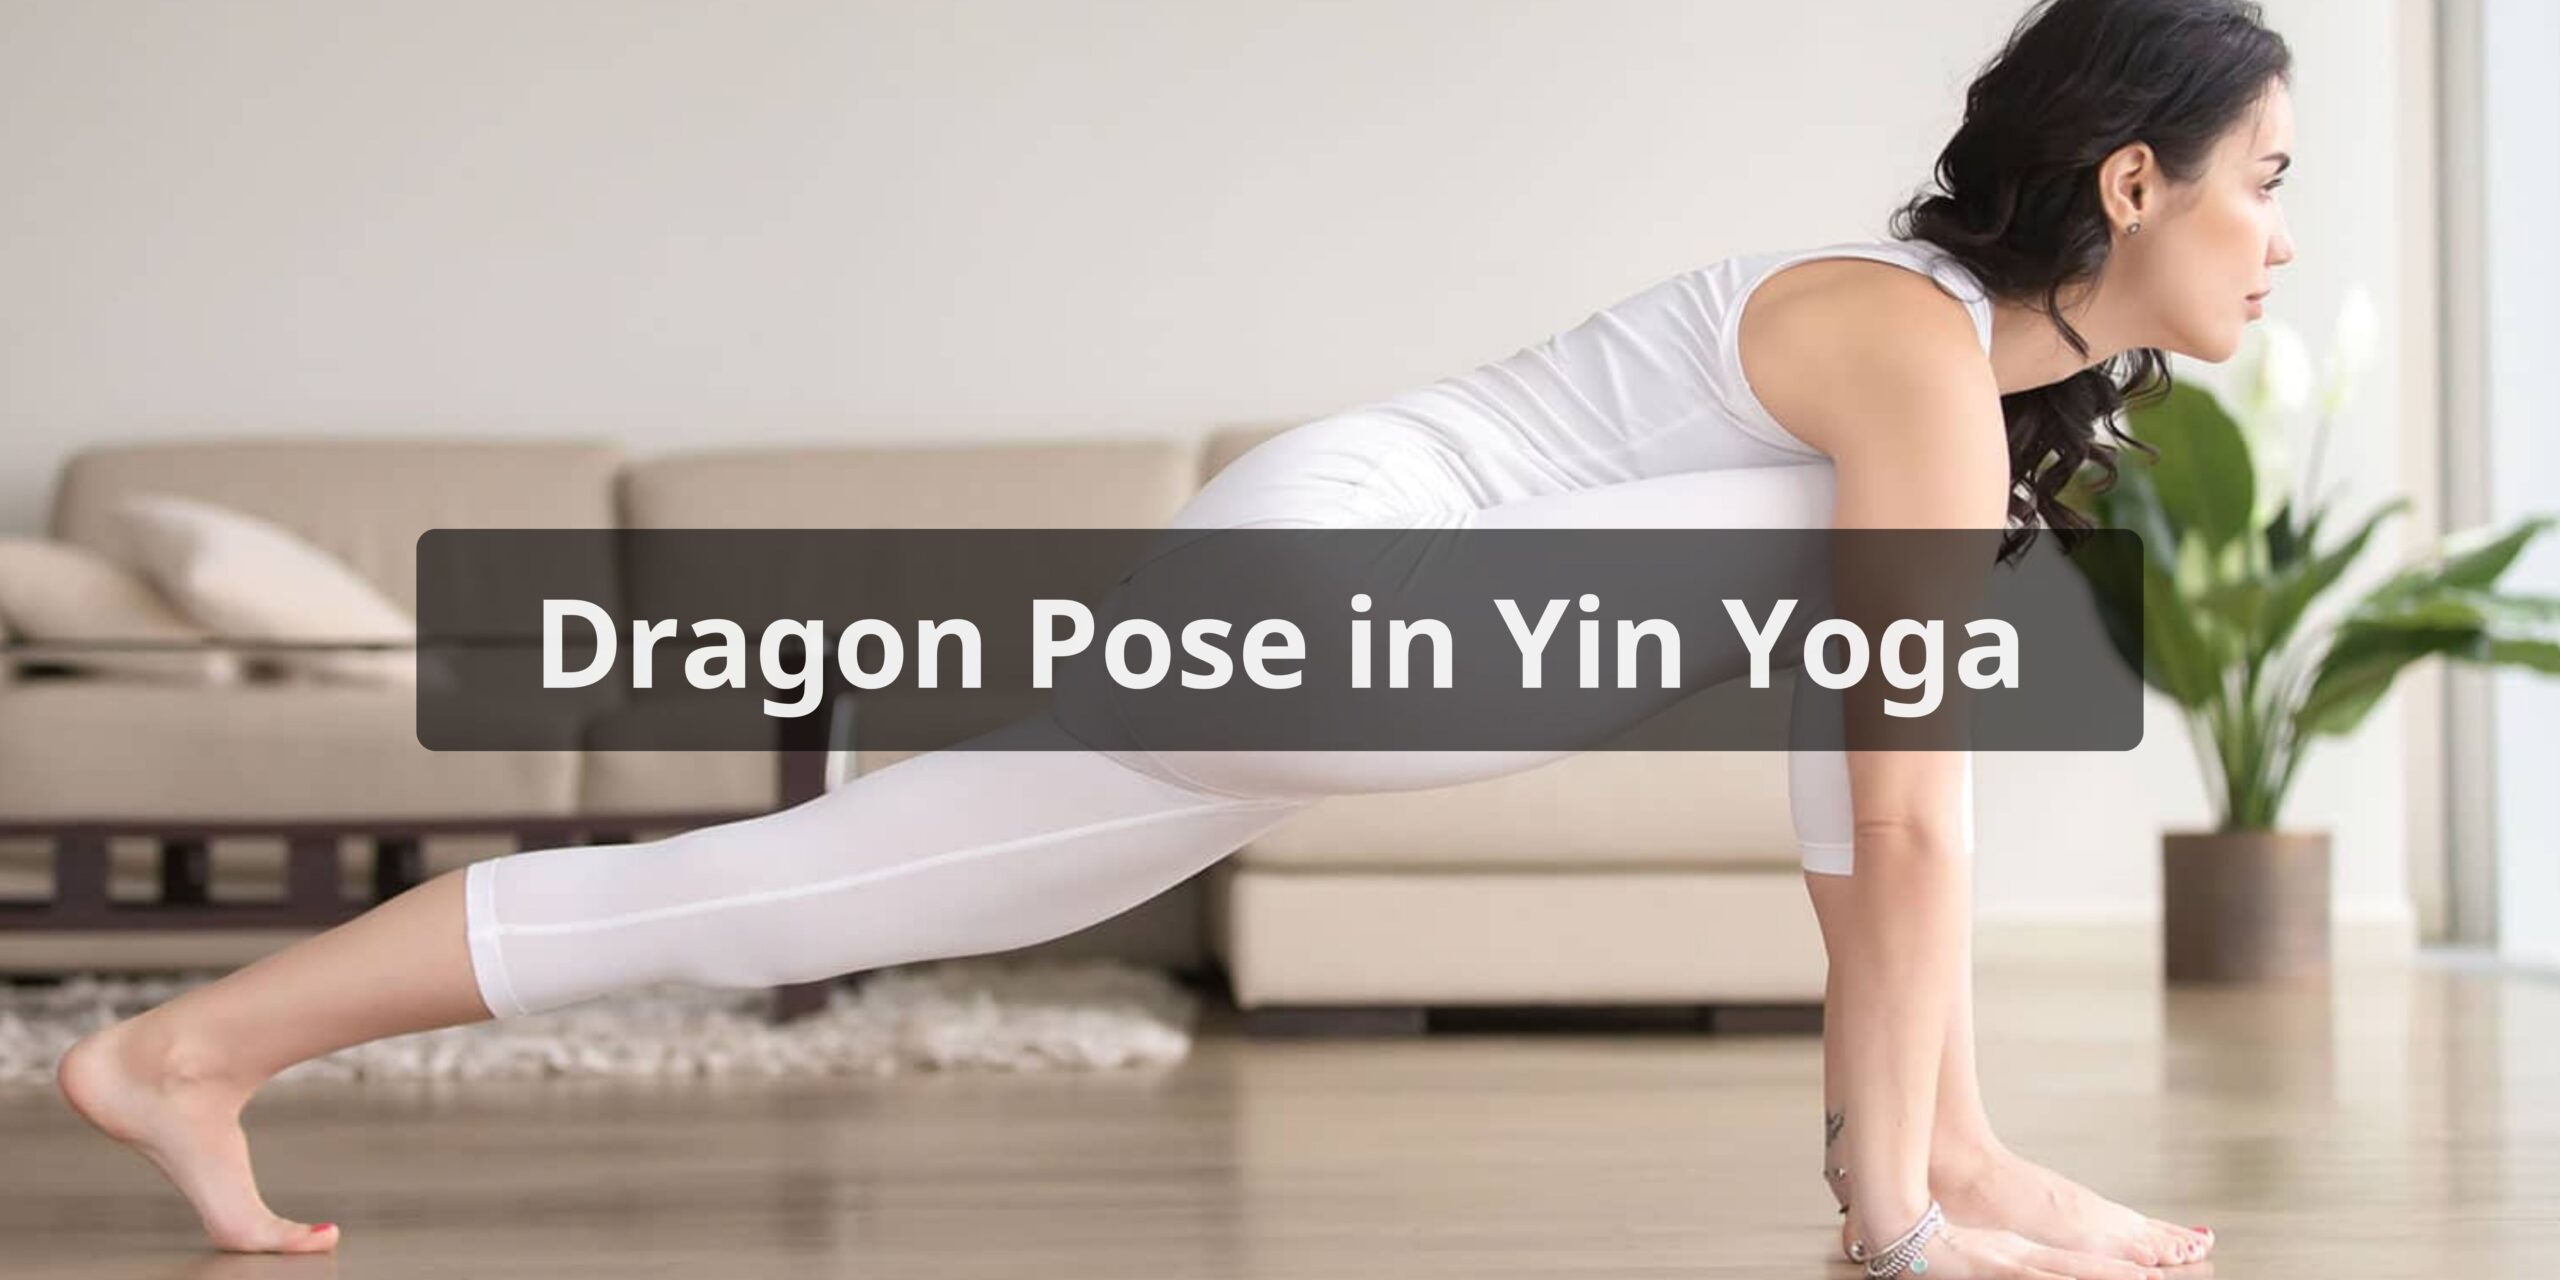 Benefits of Dragon Pose Yin Yoga